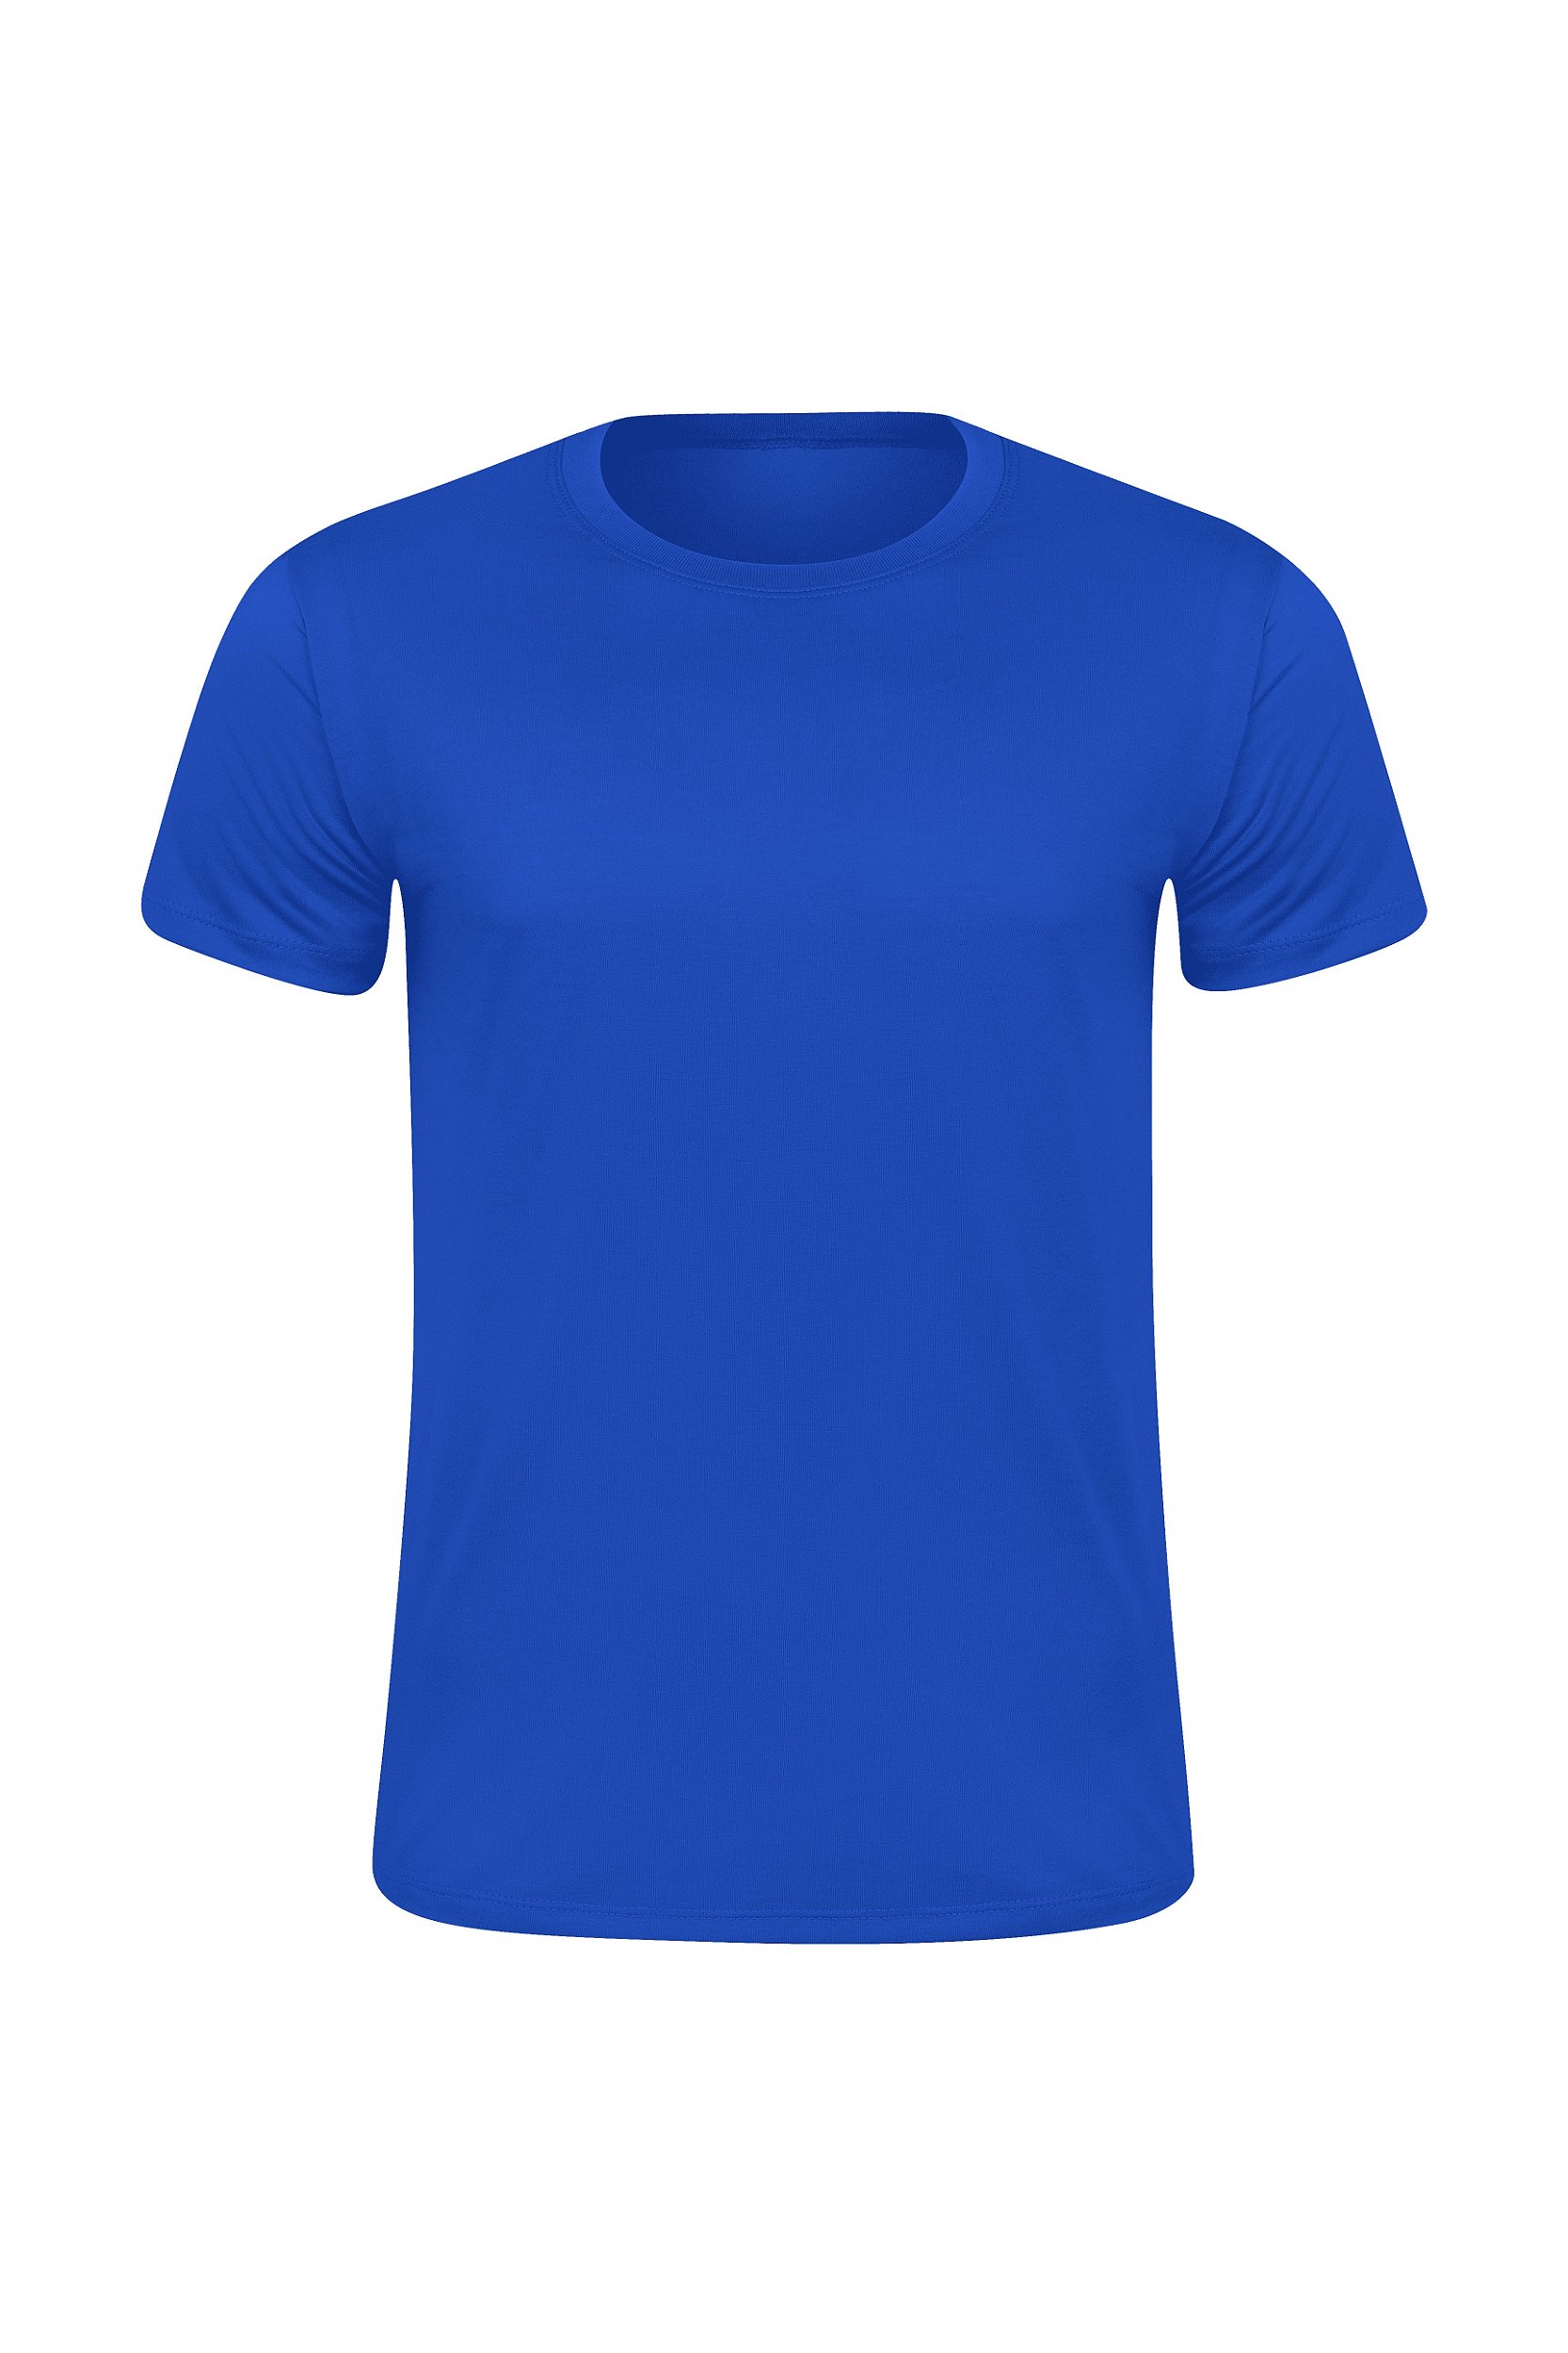 Fotos de Camisa azul, Imagens de Camisa azul sem royalties